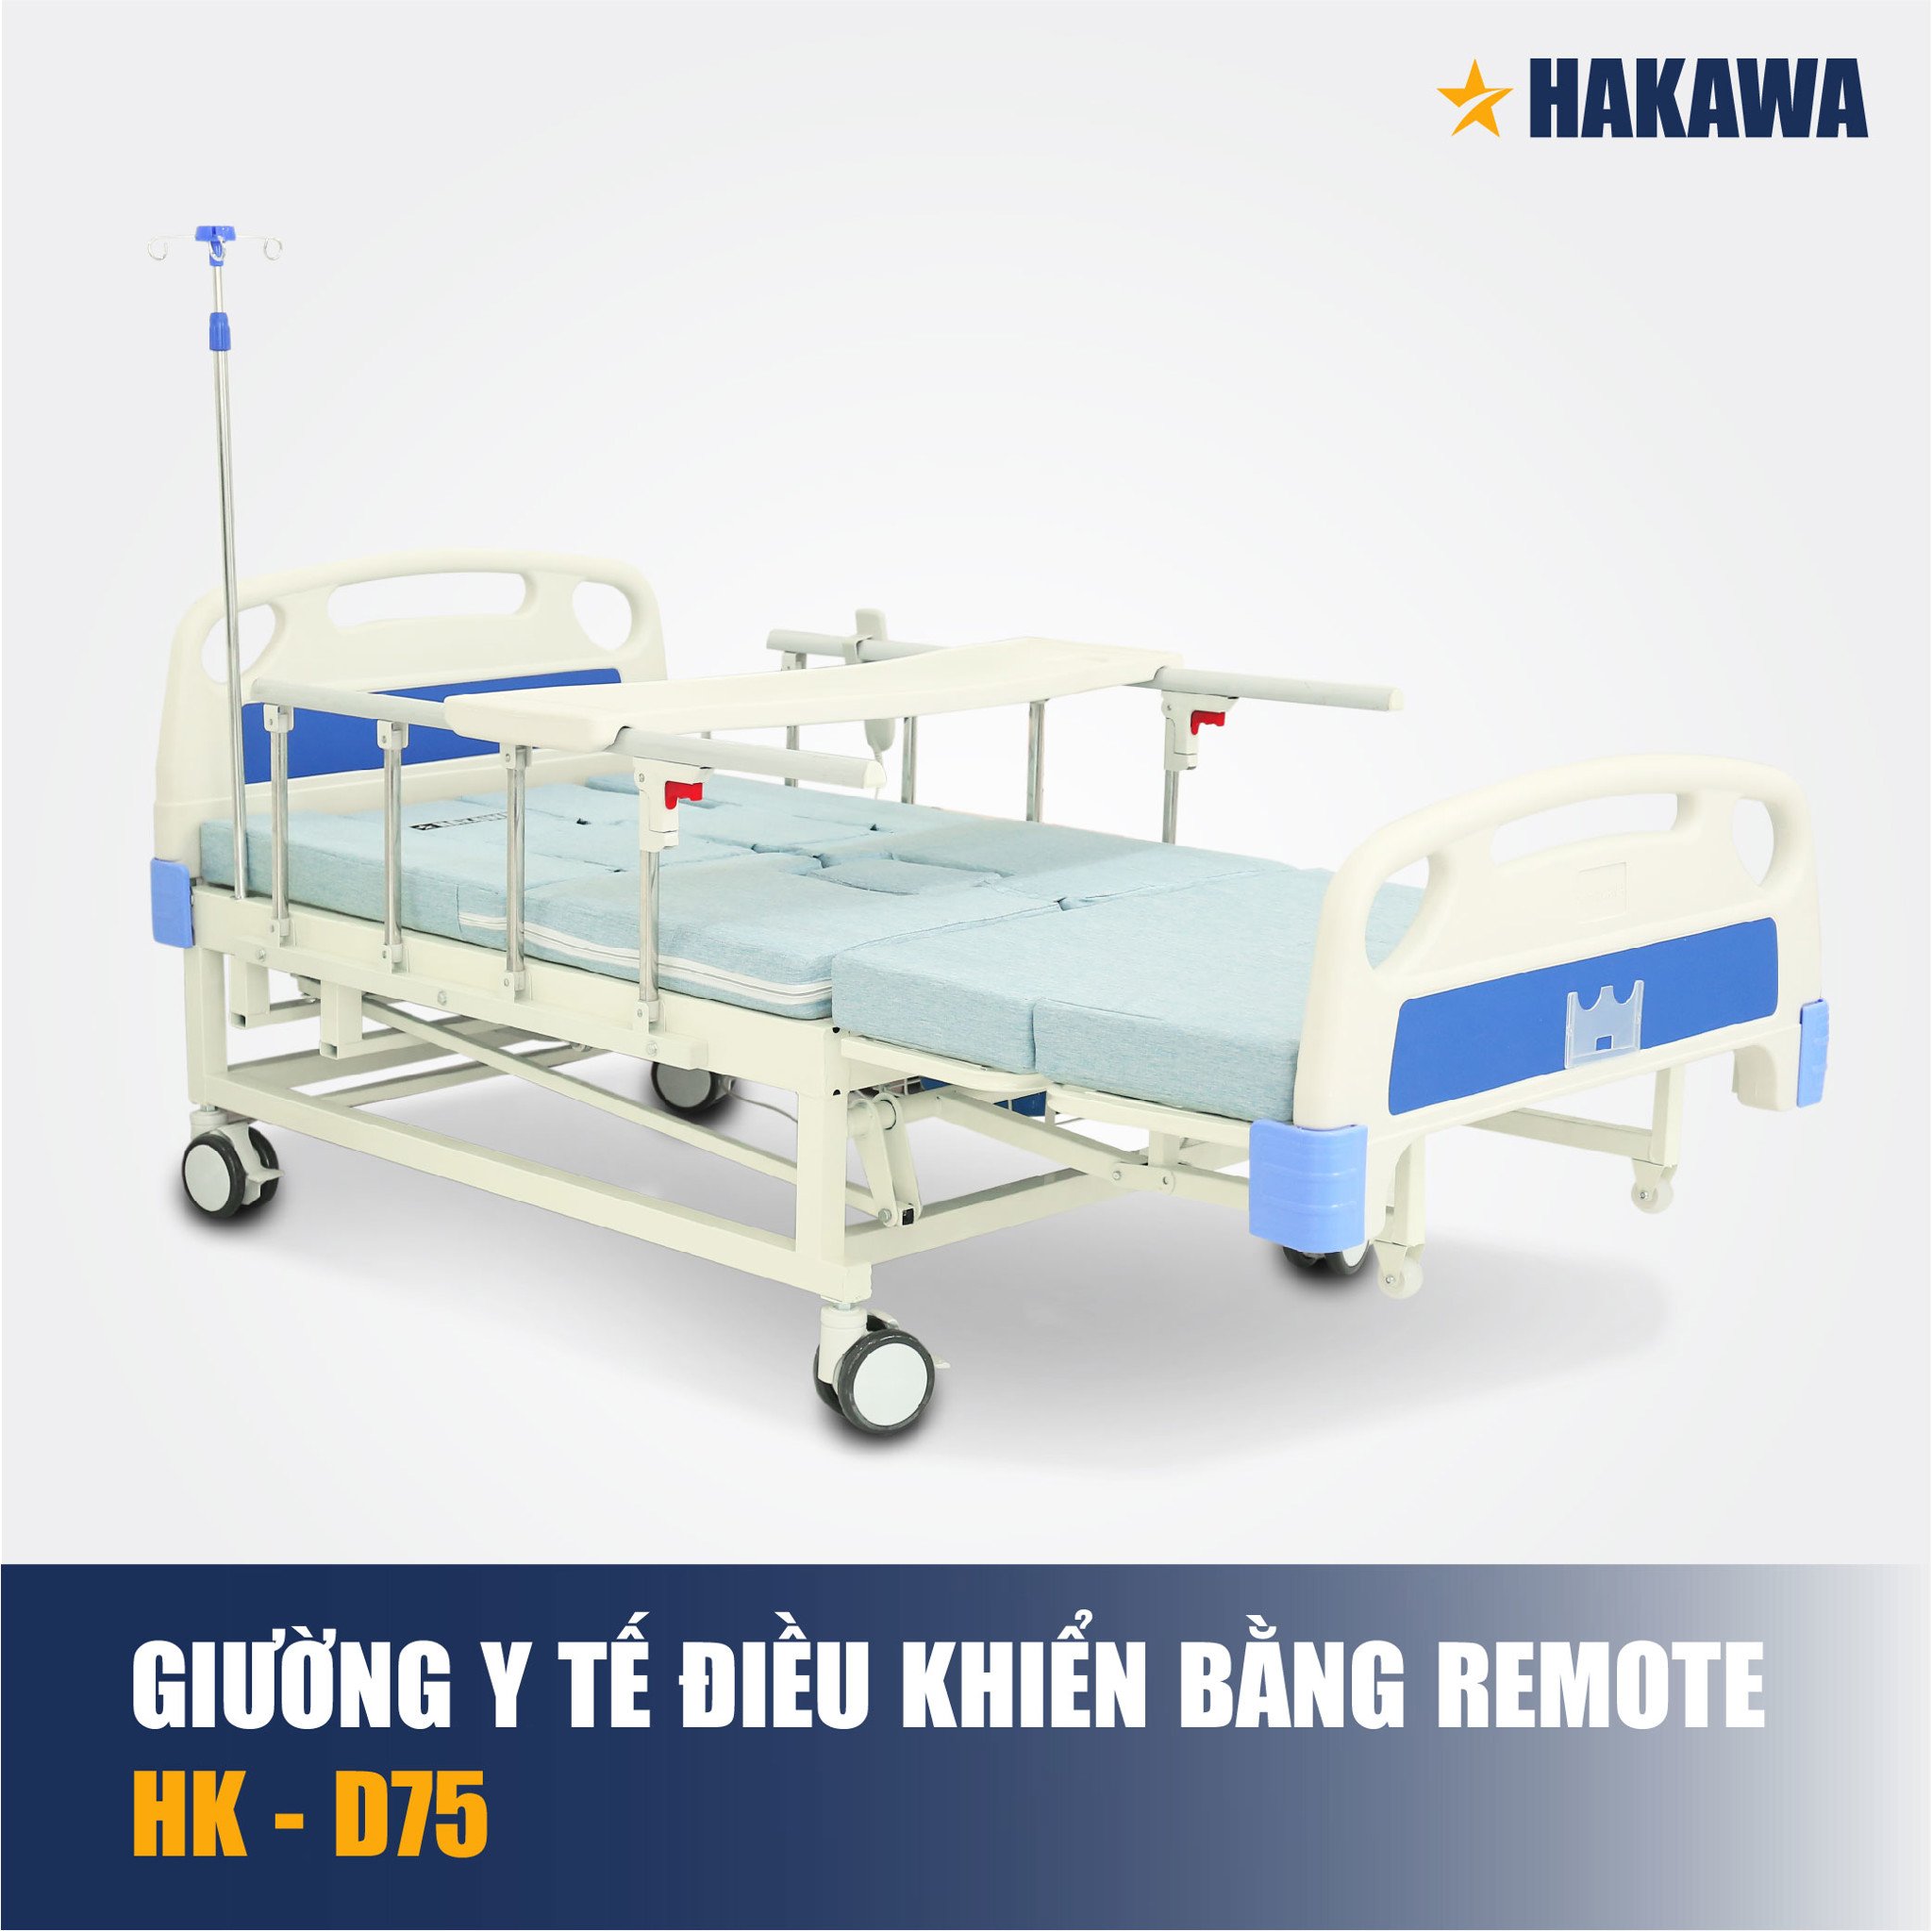 Giường y tế điều khiển bằng remote Hakawa HK-D75